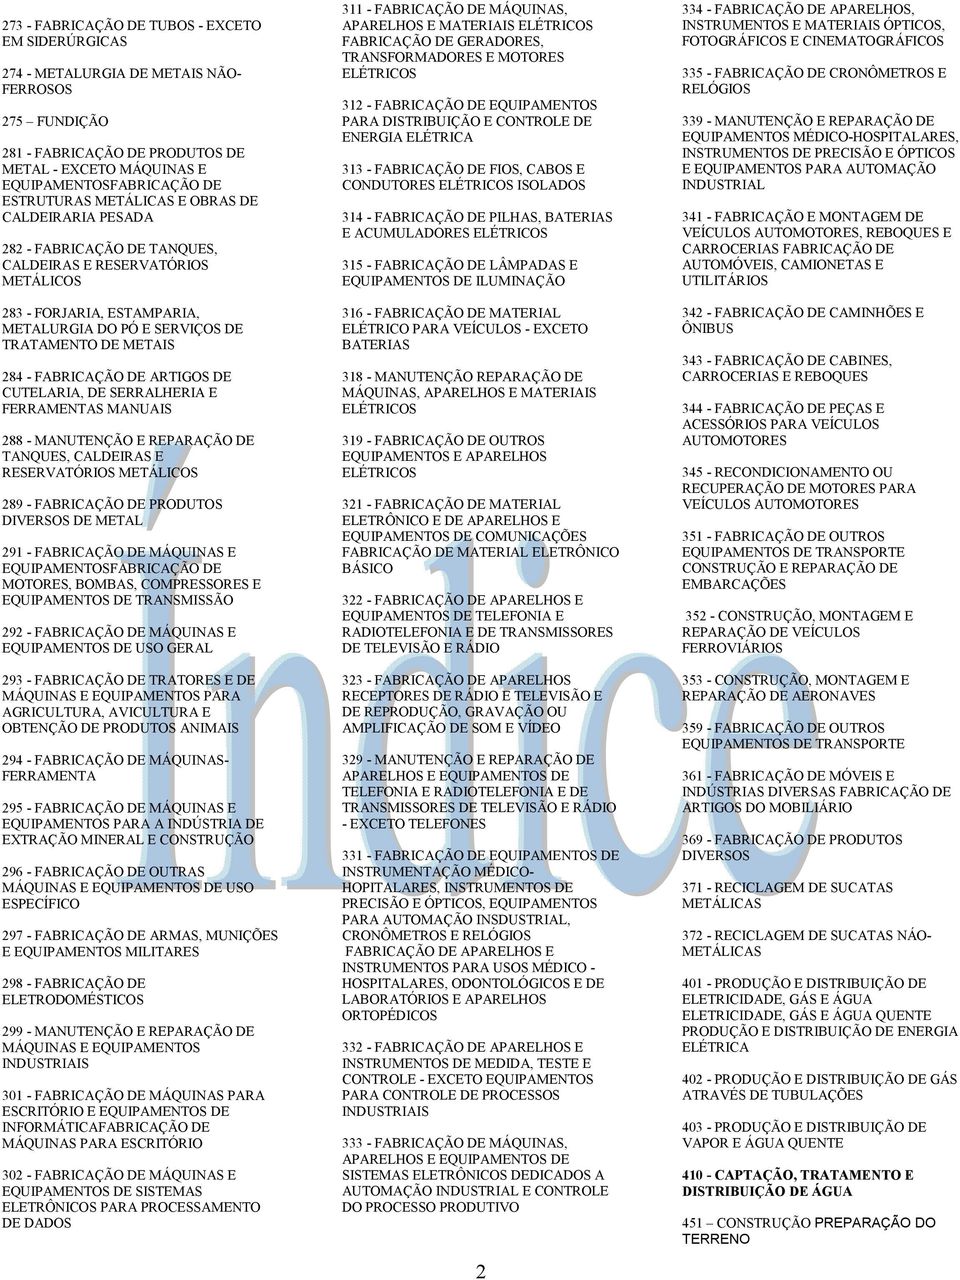 FABRICAÇÃO DE ARTIGOS DE CUTELARIA, DE SERRALHERIA E FERRAMENTAS MANUAIS 288 - MANUTENÇÃO E REPARAÇÃO DE TANQUES, CALDEIRAS E RESERVATÓRIOS METÁLICOS 289 - FABRICAÇÃO DE PRODUTOS DIVERSOS DE METAL